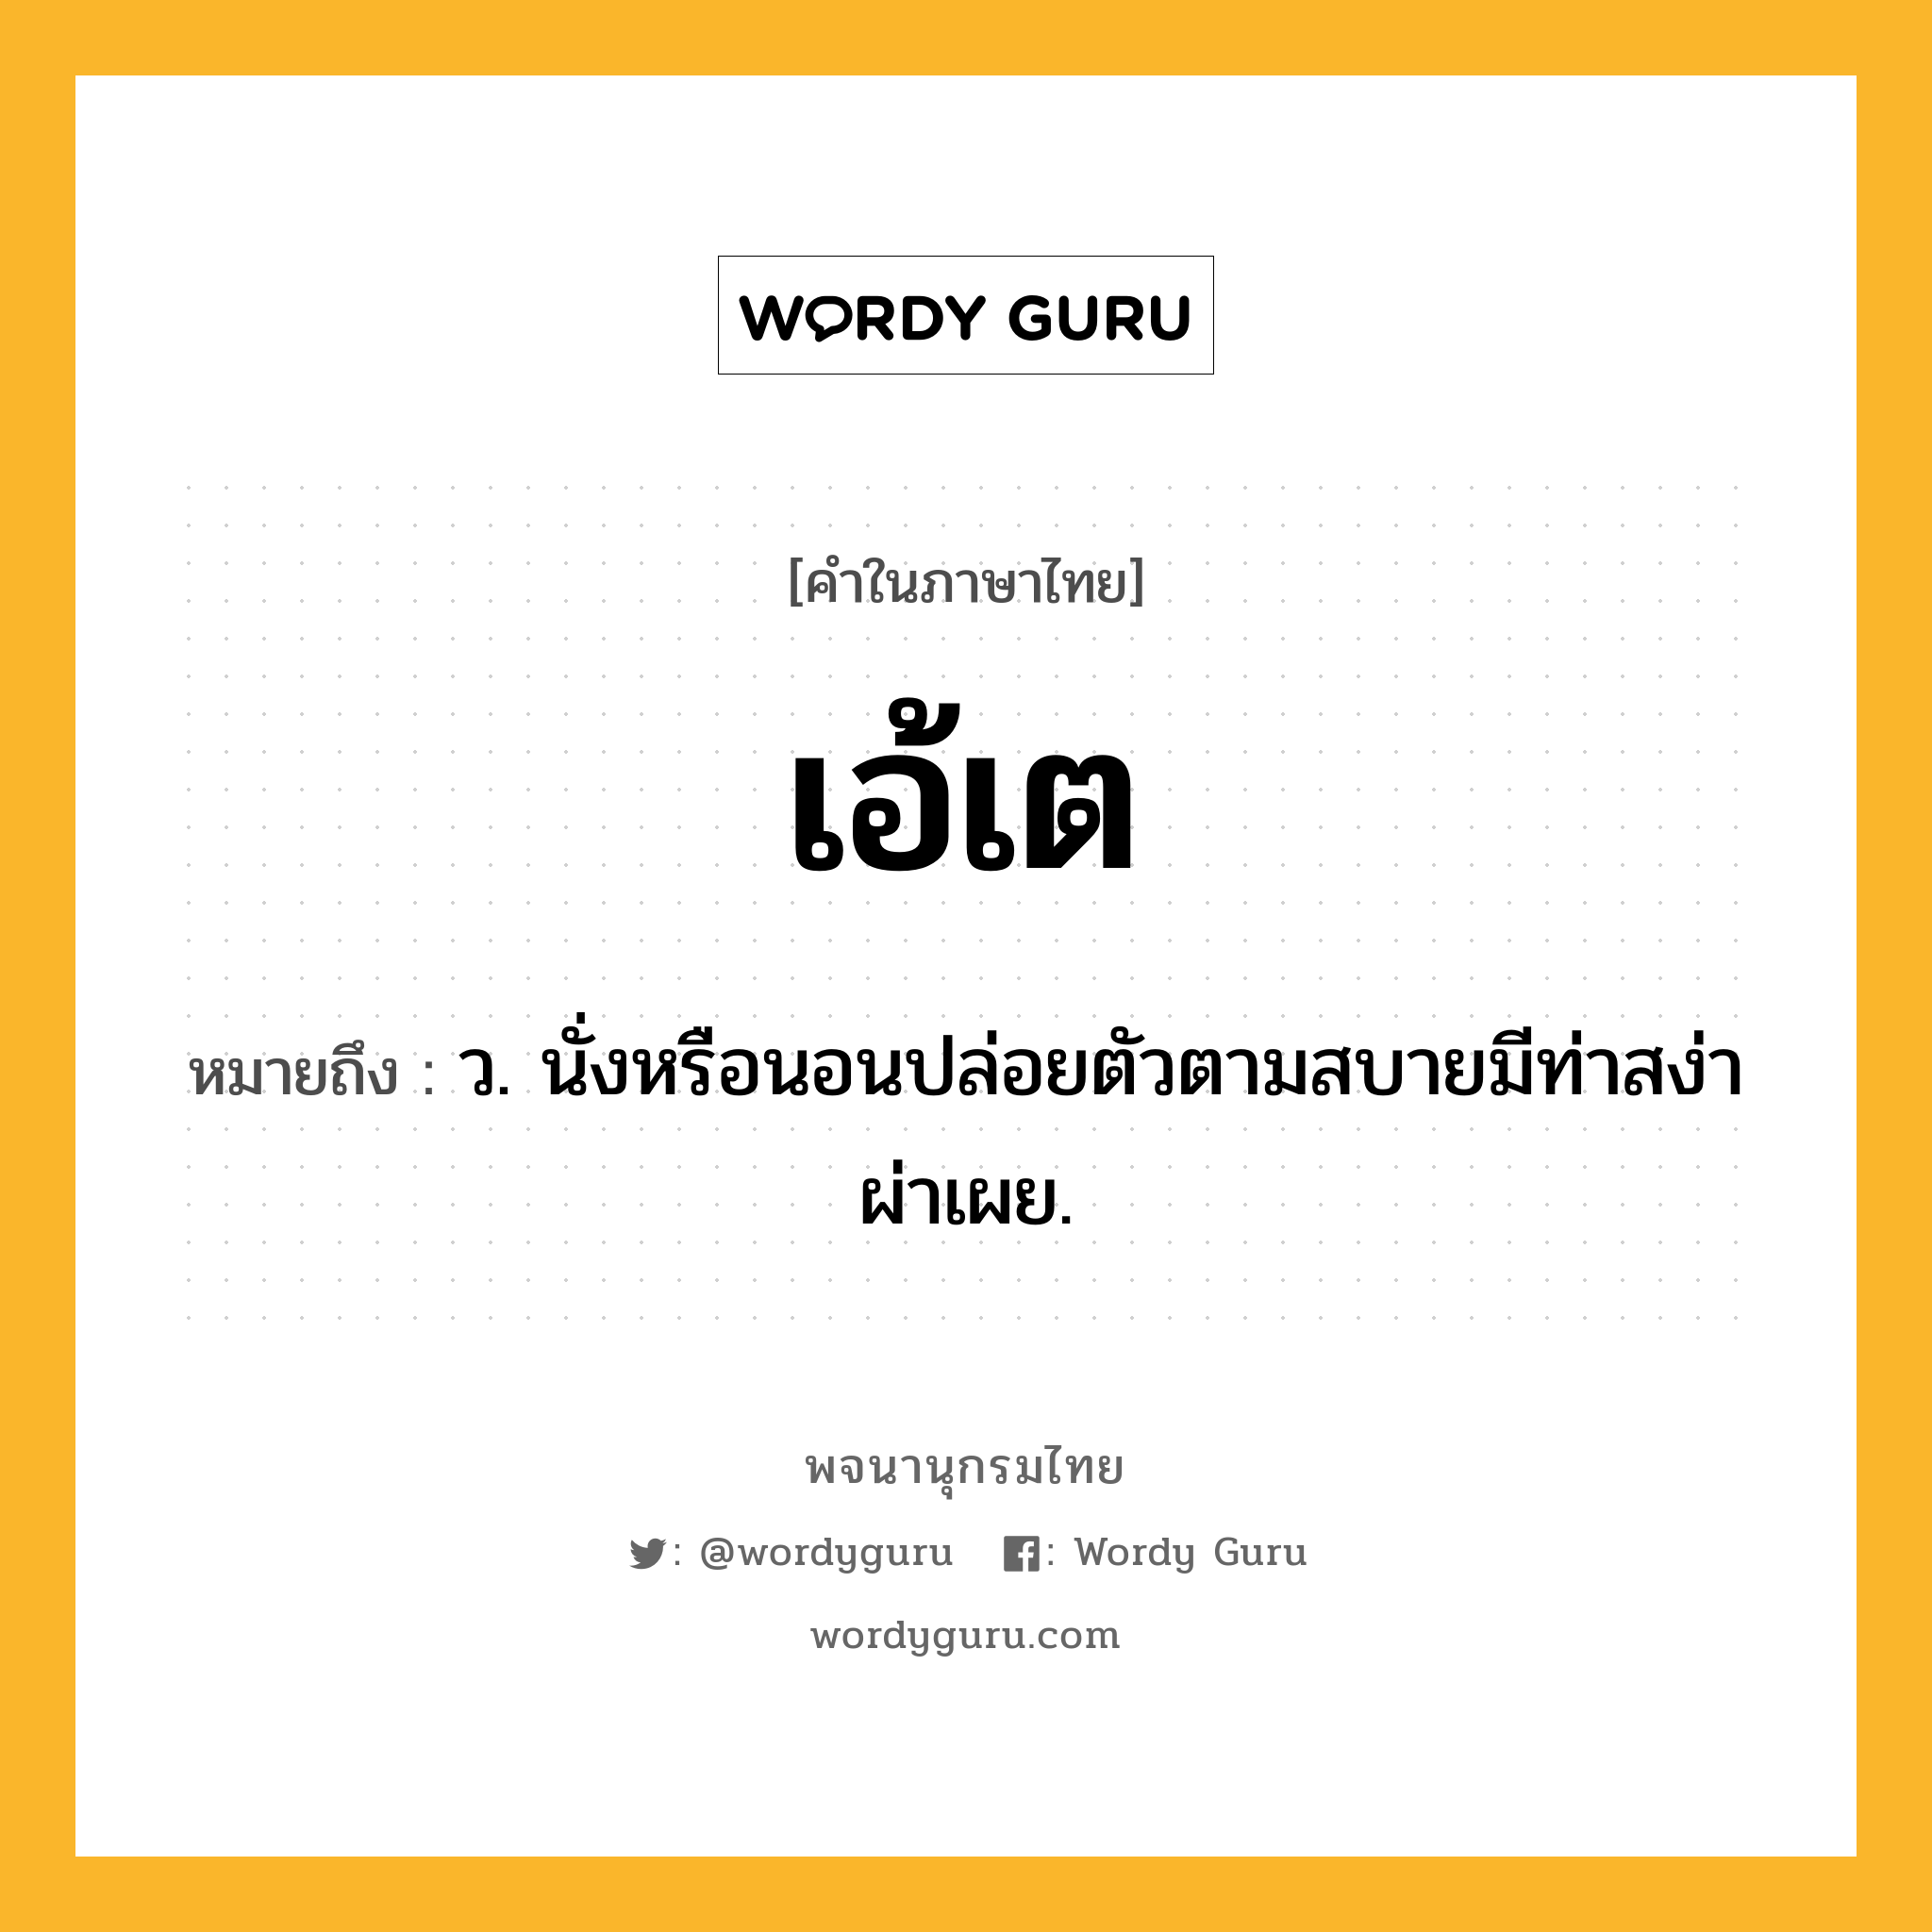 เอ้เต ความหมาย หมายถึงอะไร?, คำในภาษาไทย เอ้เต หมายถึง ว. นั่งหรือนอนปล่อยตัวตามสบายมีท่าสง่าผ่าเผย.